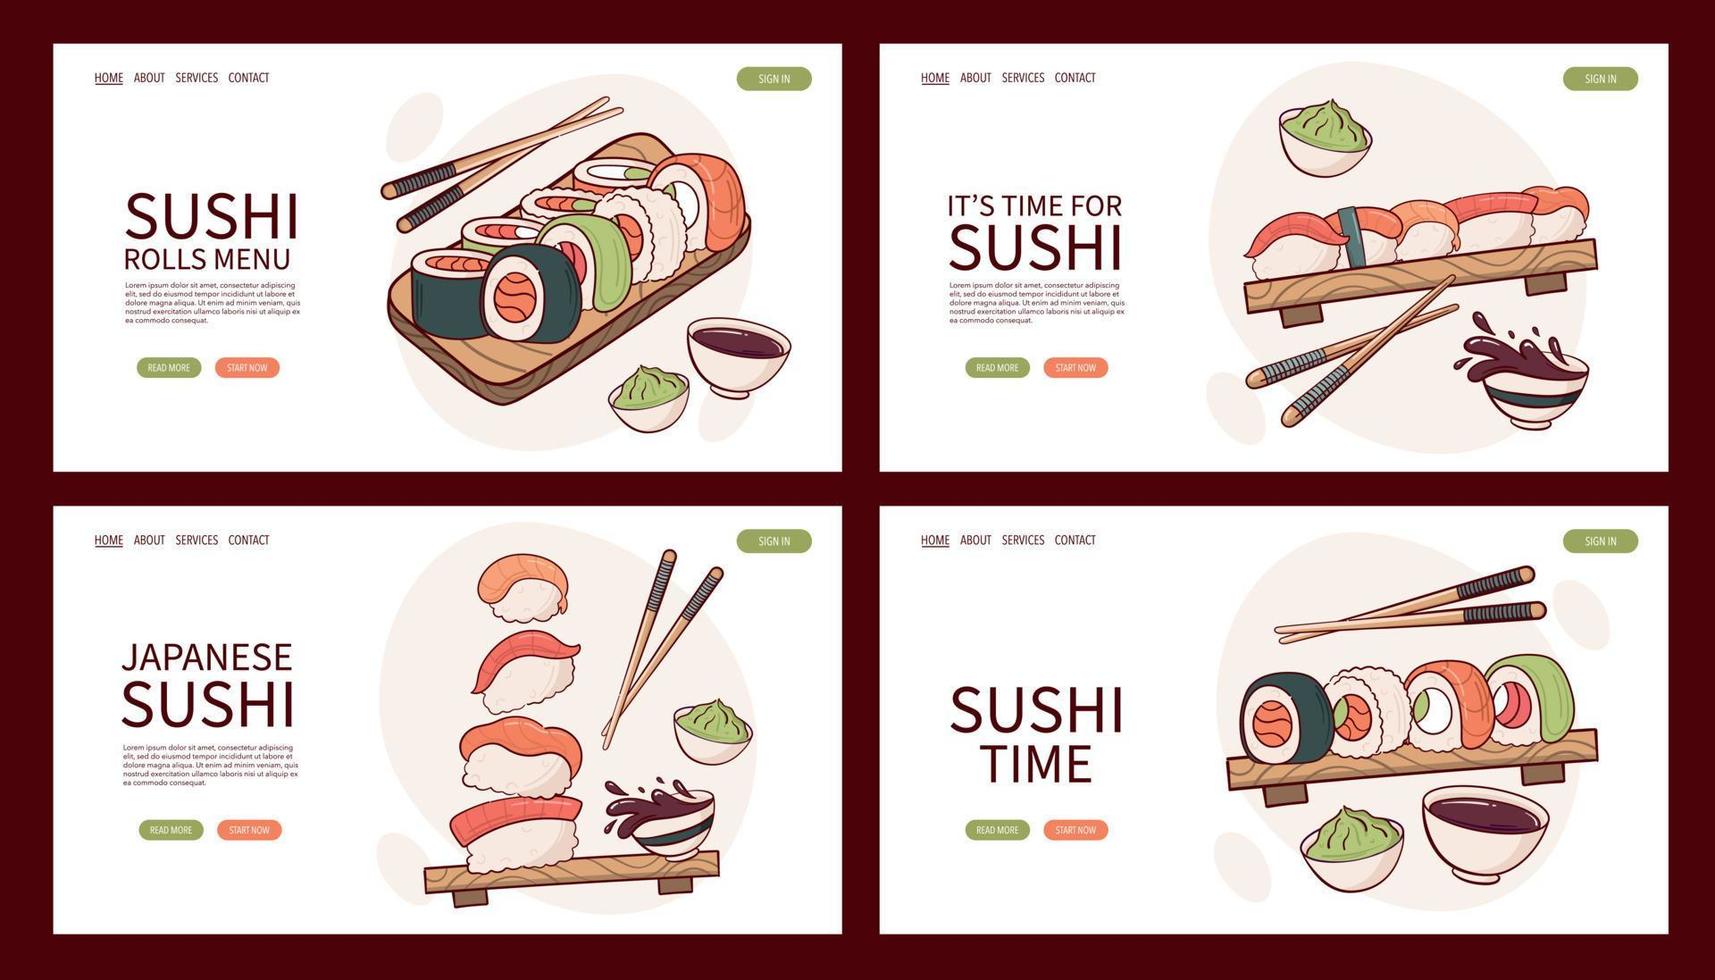 página web desenhar ilustração vetorial de rolo de sushi nigiri. comida tradicional asiática japonesa, culinária, conceito de menu. banner, site, publicidade em estilo cartoon doodle.. vetor